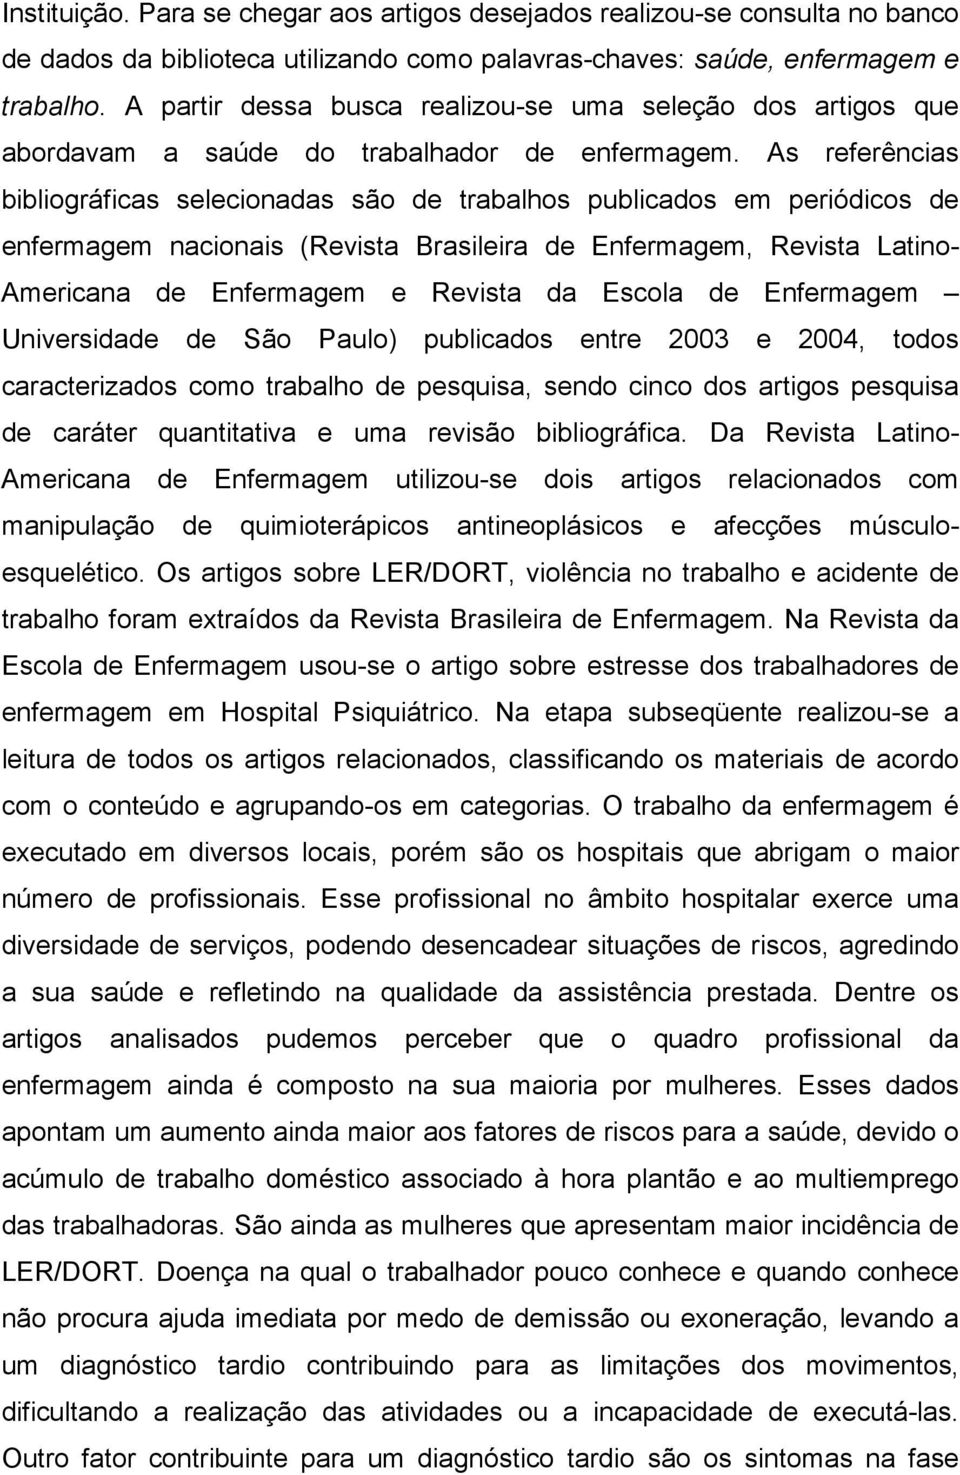 As referências bibliográficas selecionadas são de trabalhos publicados em periódicos de enfermagem nacionais (Revista Brasileira de Enfermagem, Revista Latino- Americana de Enfermagem e Revista da